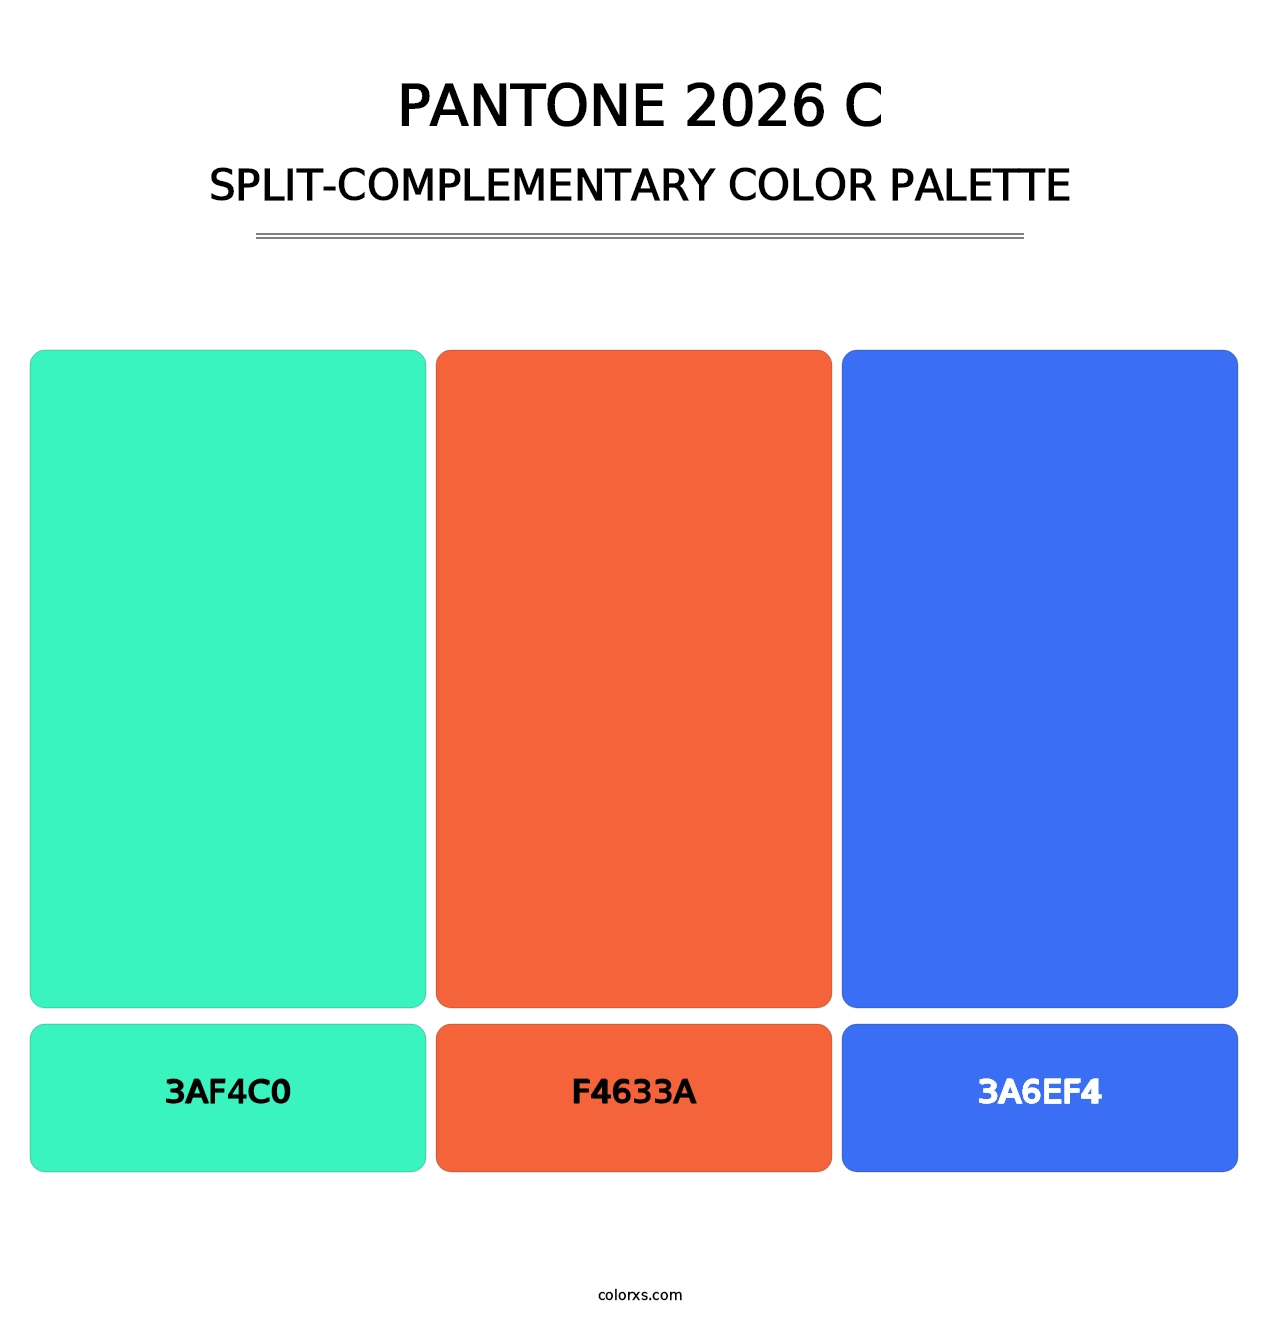 PANTONE 2026 C - Split-Complementary Color Palette